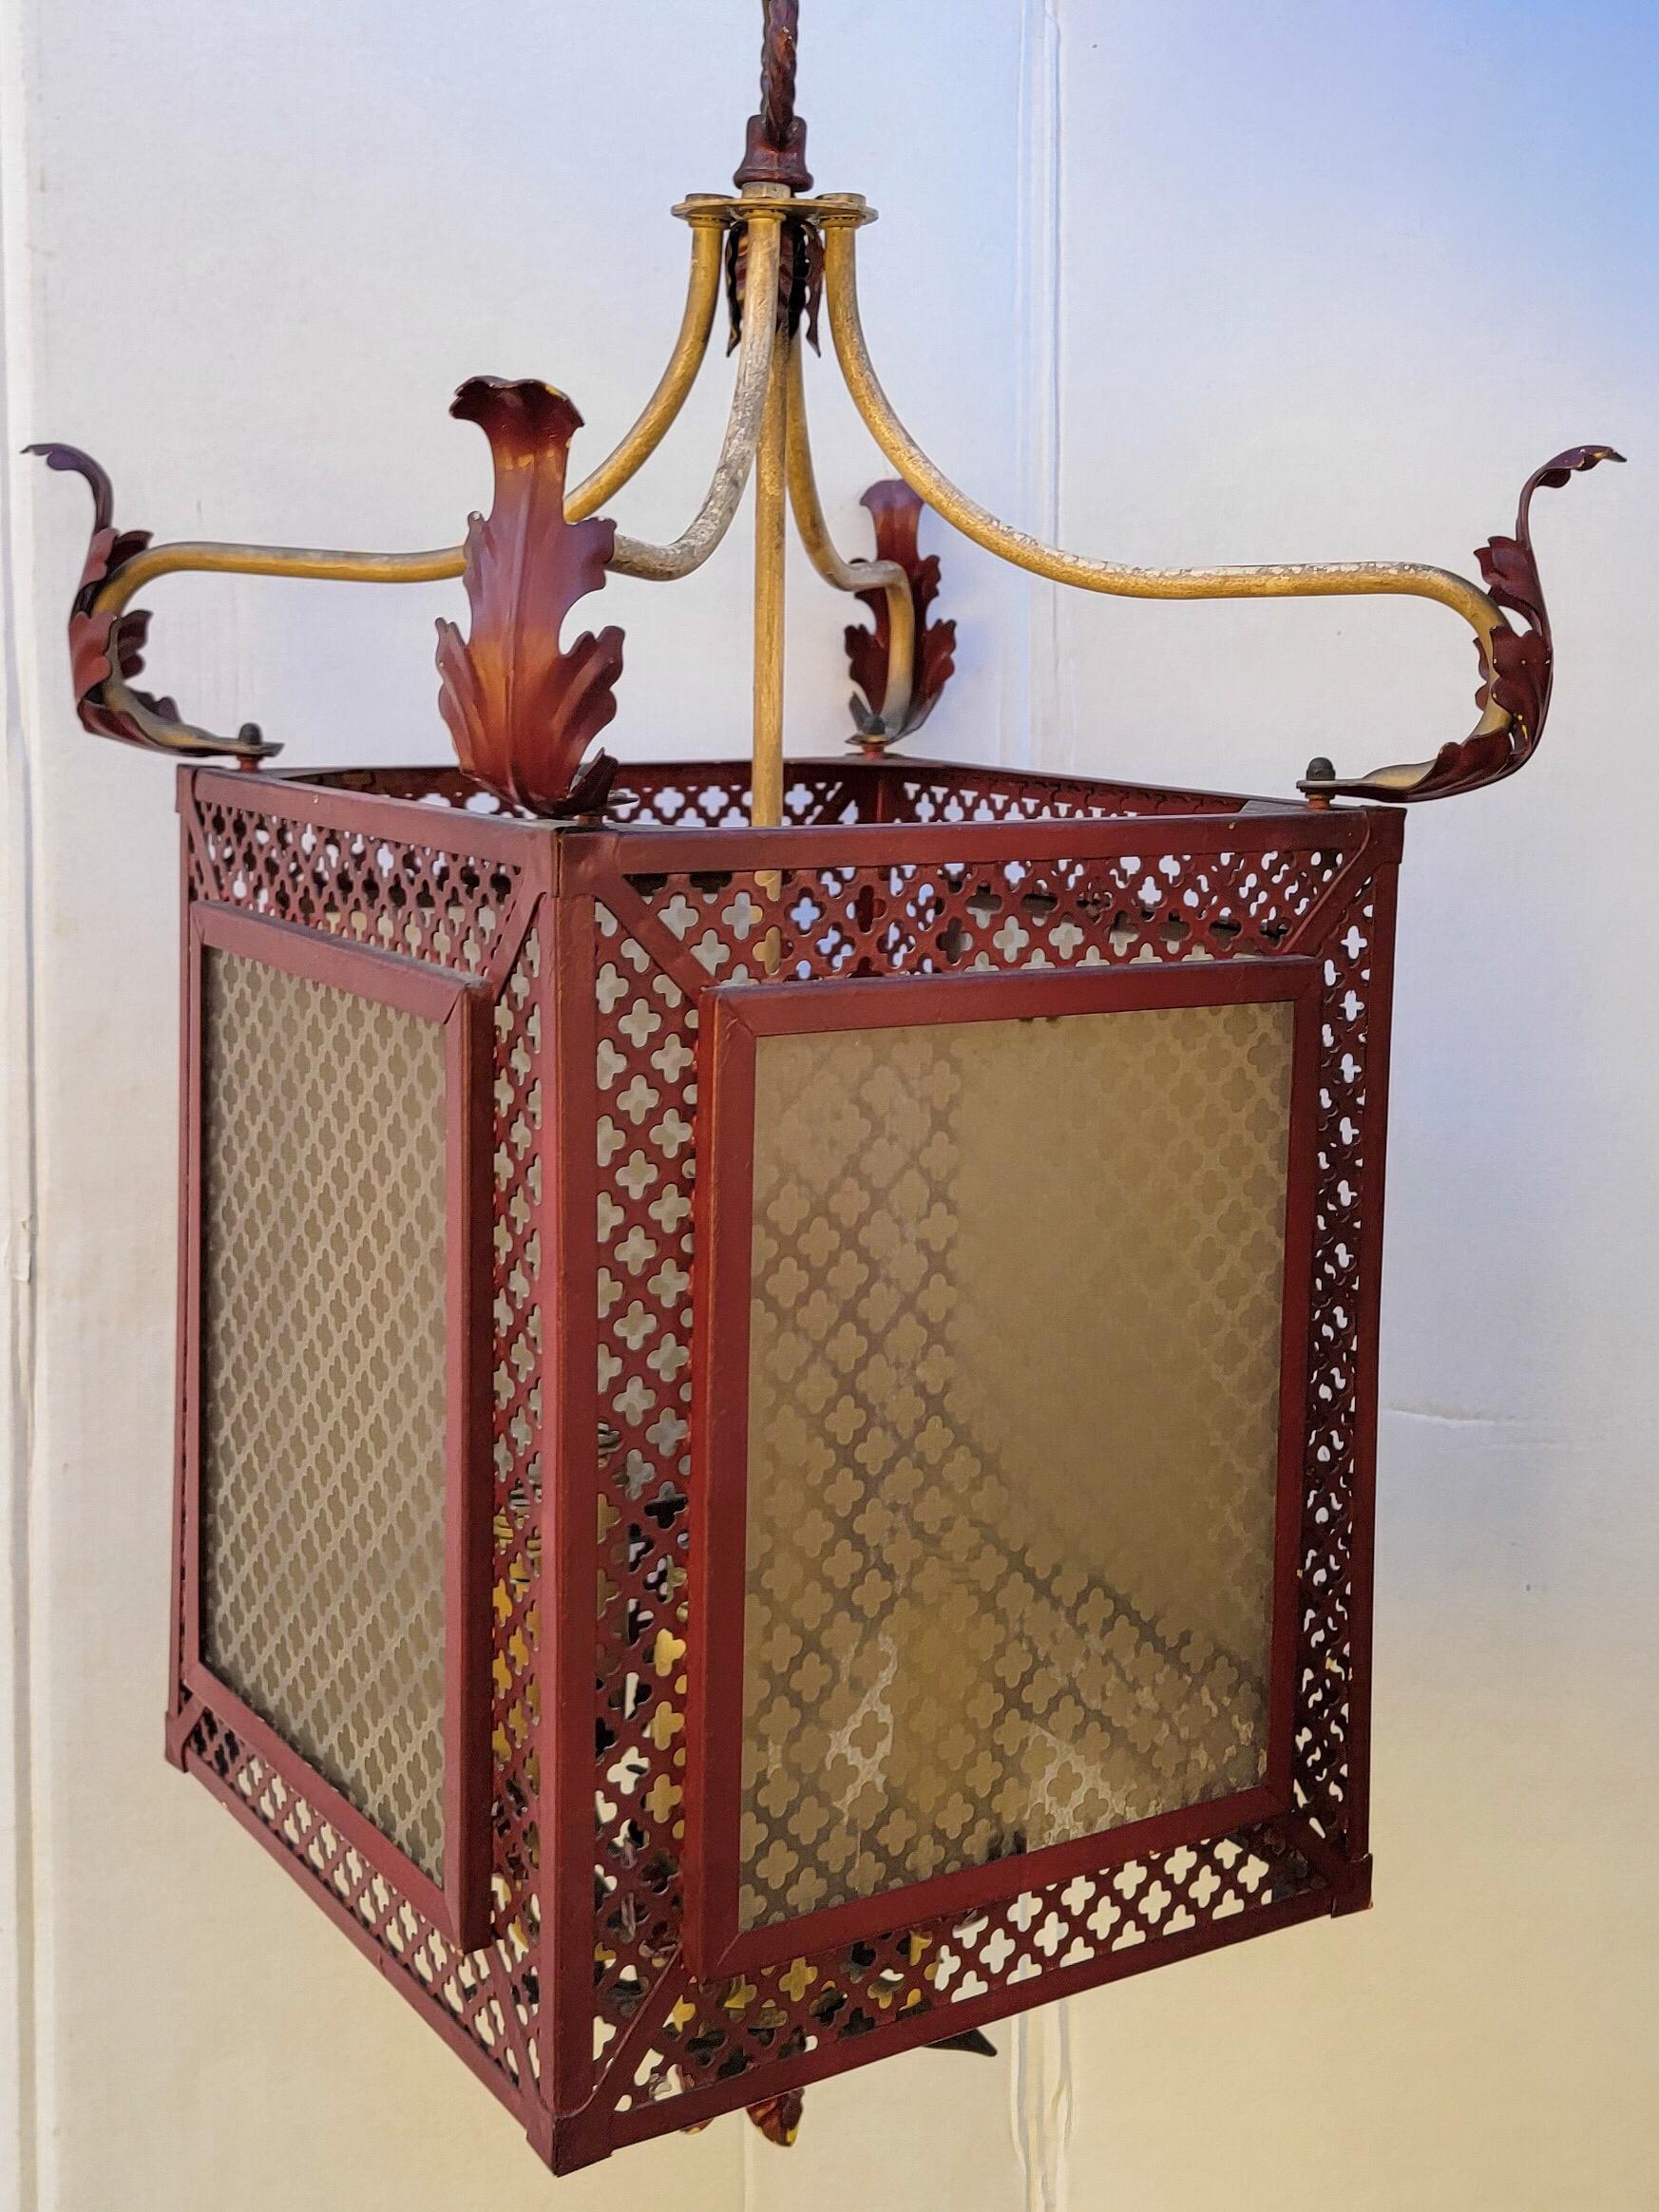 1960s Regency Style Italian Red Tole Pagoda Inspired Lantern Form Chandelier 1